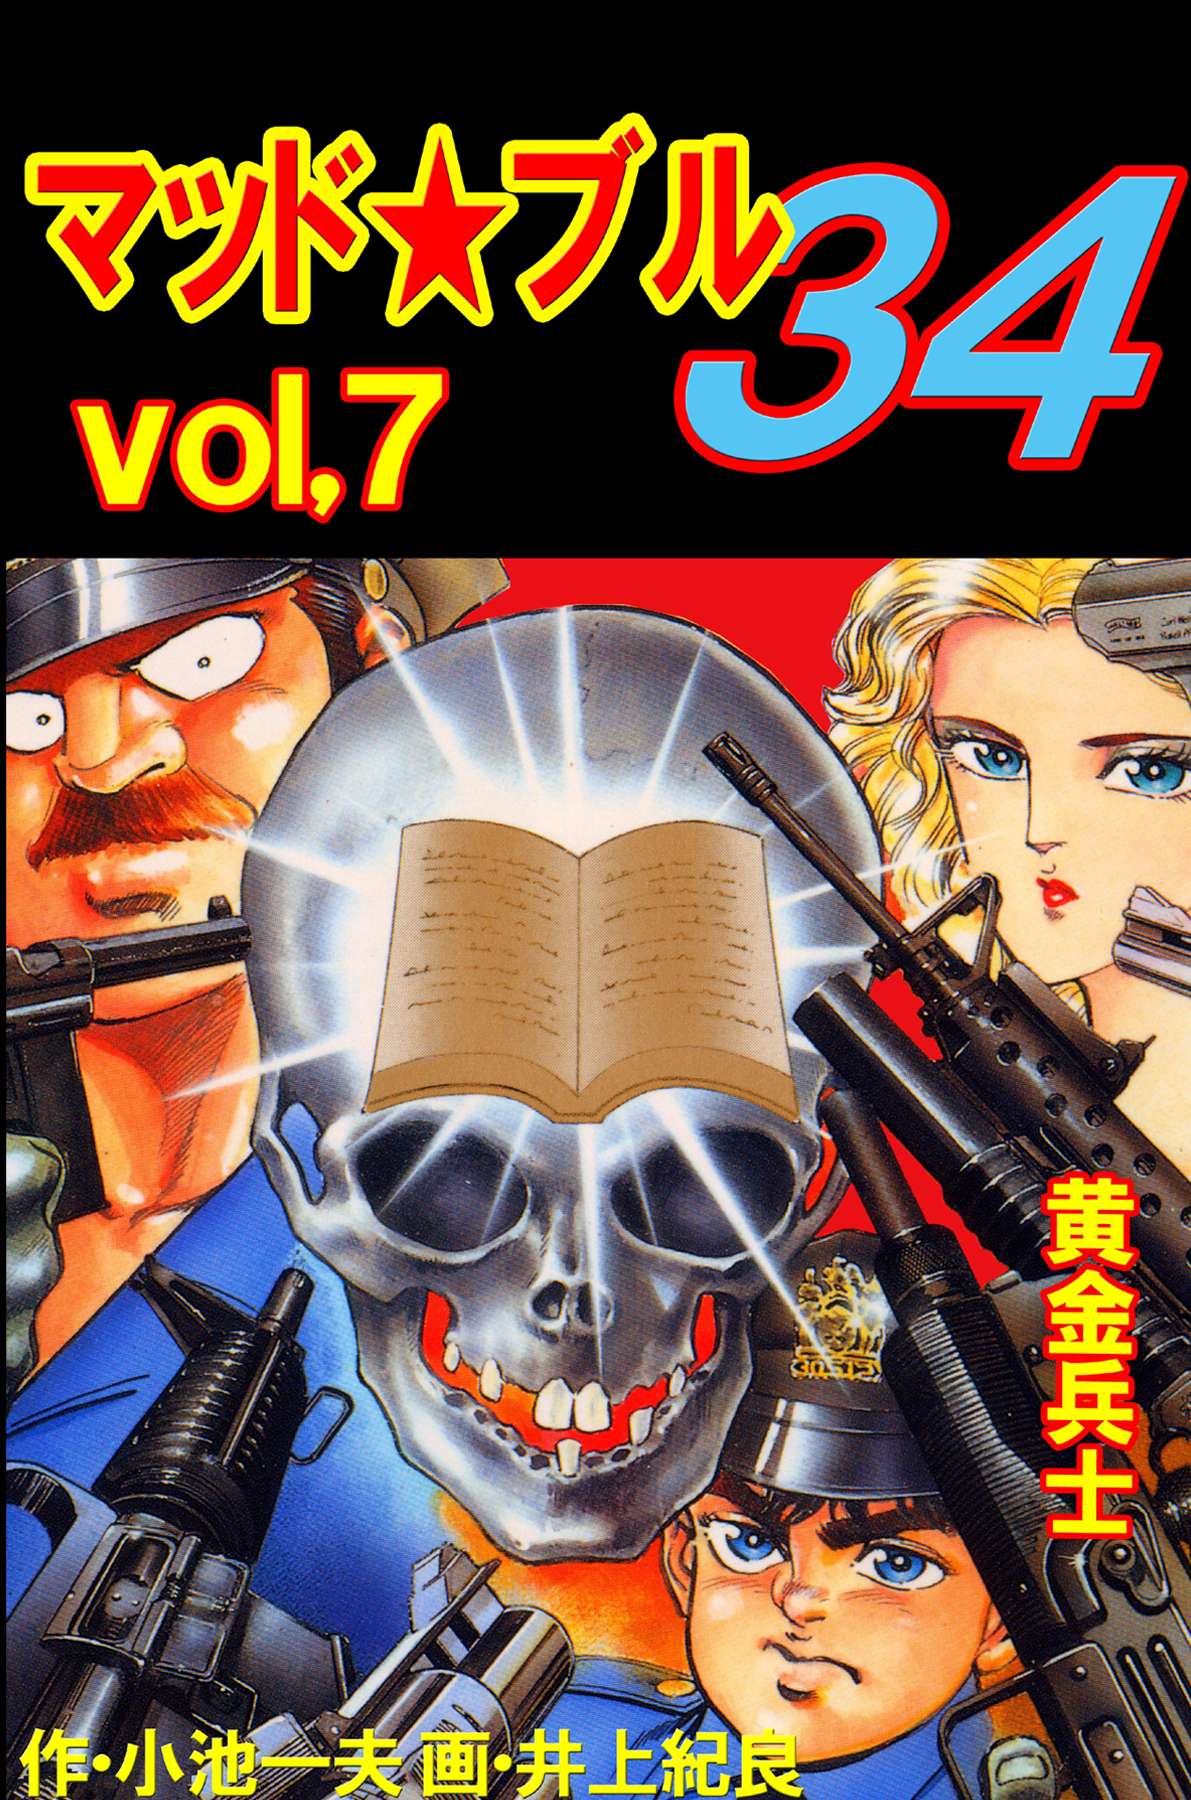 マッド☆ブル34 Vol，7 黄金兵士 - 小池一夫/井上紀良 - 青年マンガ 